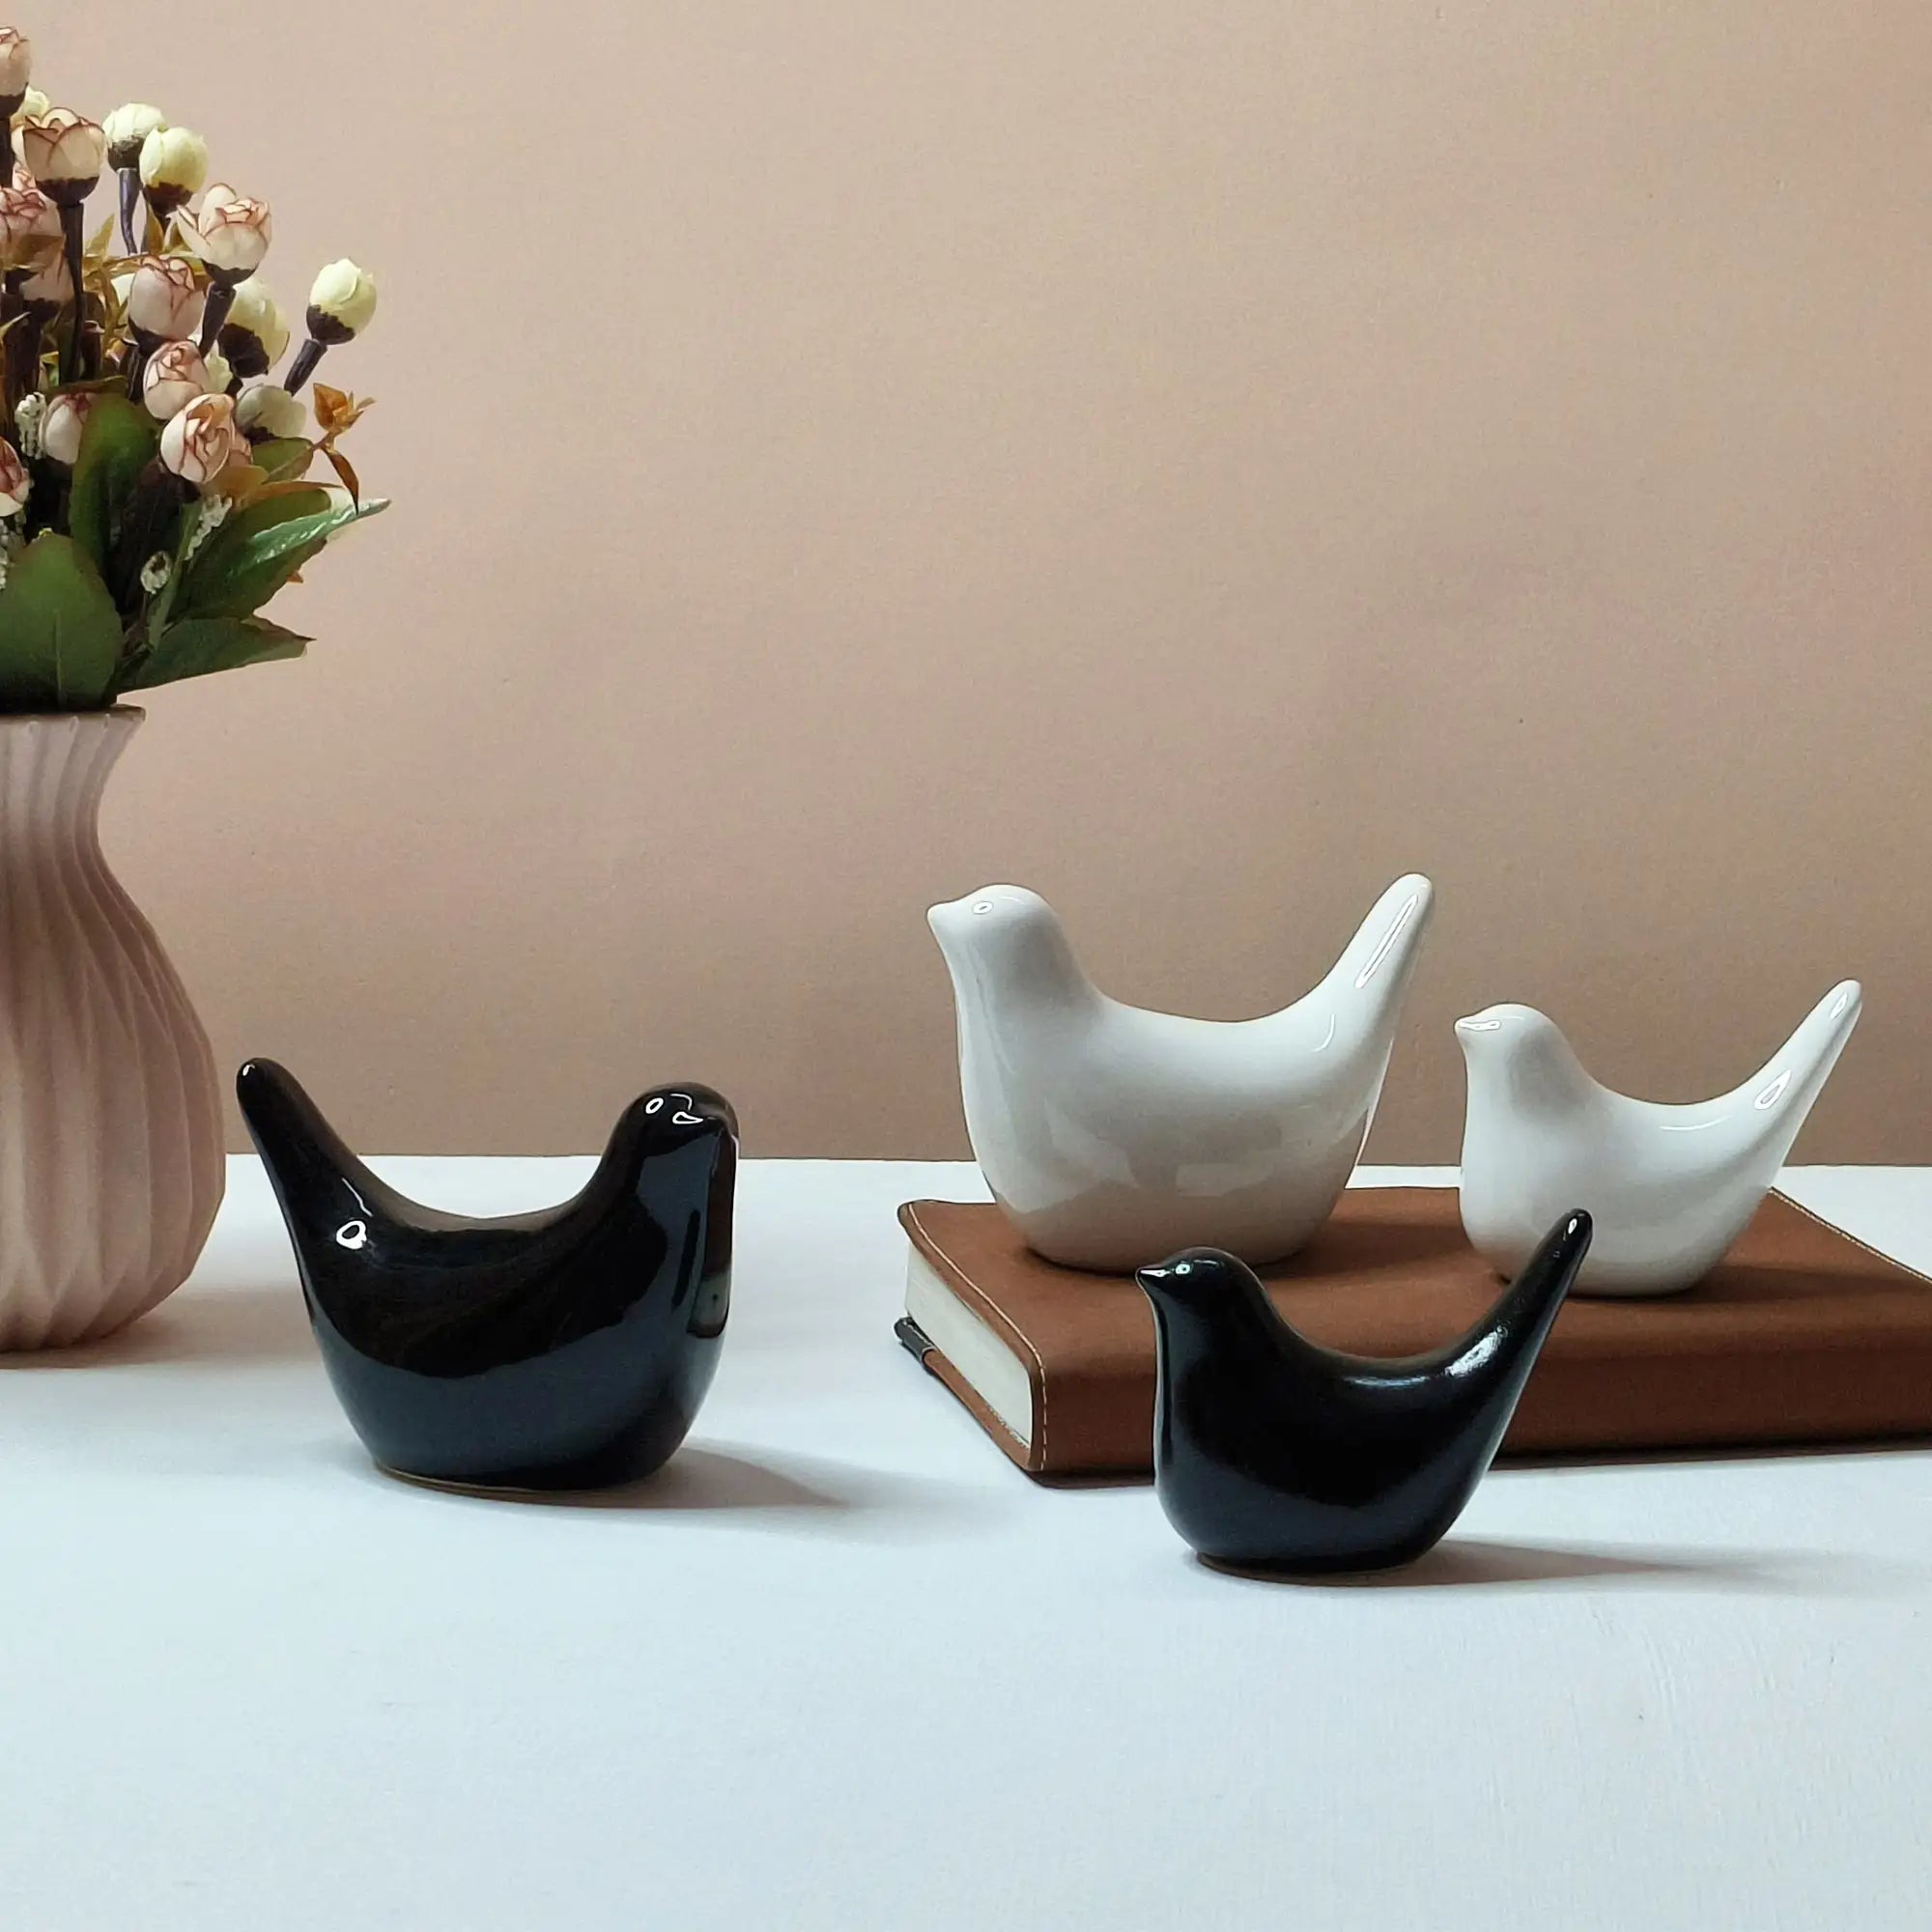 Bird Set of 4 for Home Decor made of Ceramic